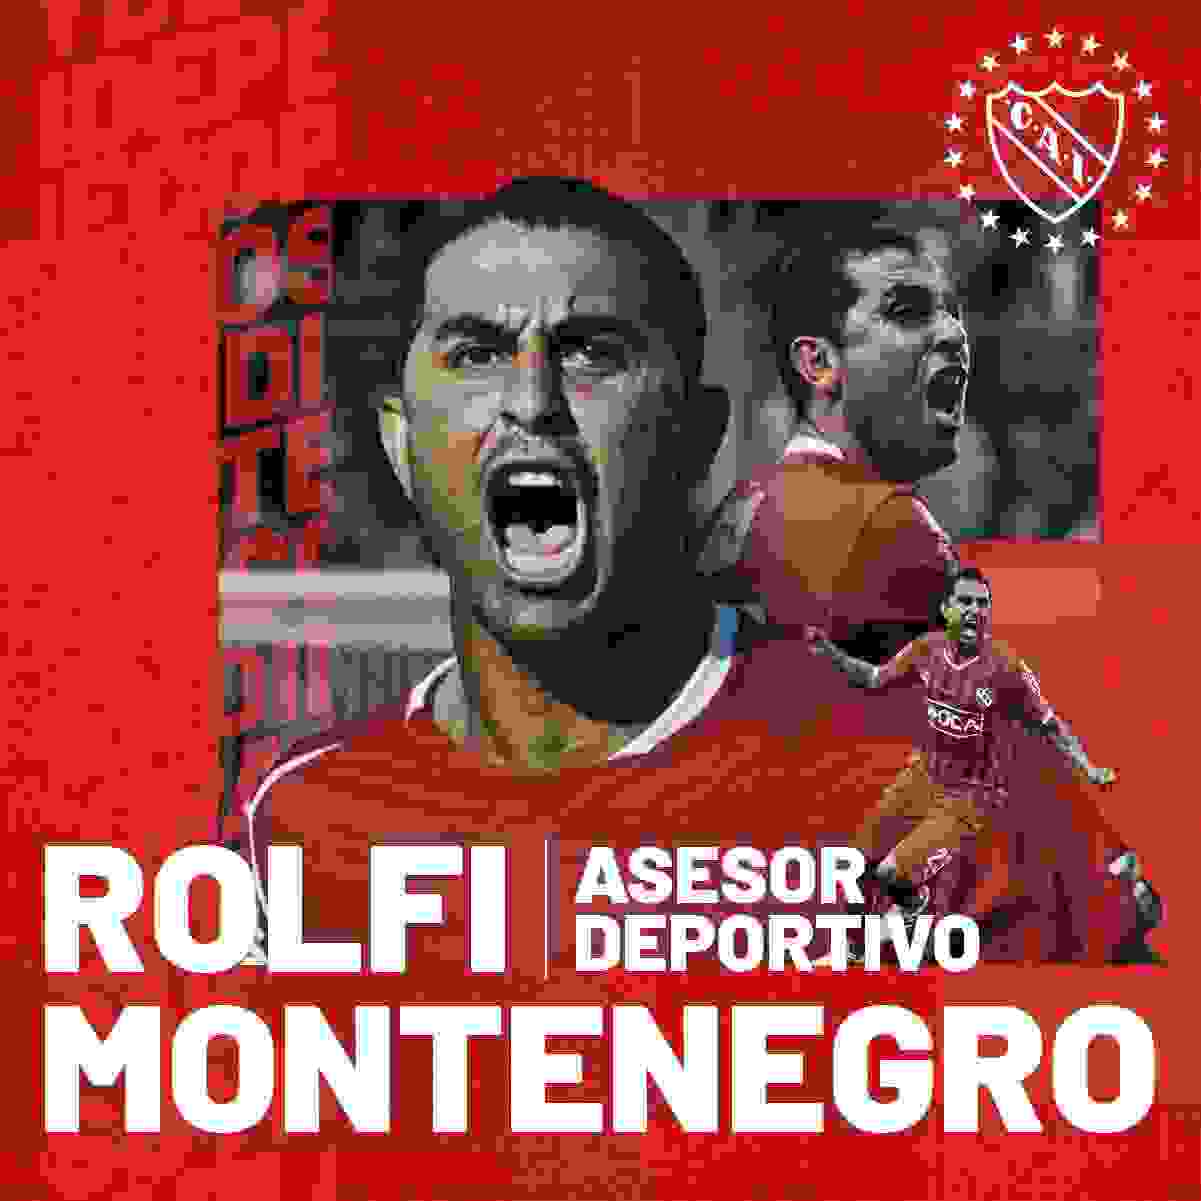 Con esta imagen, Independiente hizo oficial el retorno del Rolfi Montenegro al Rey de Copas.